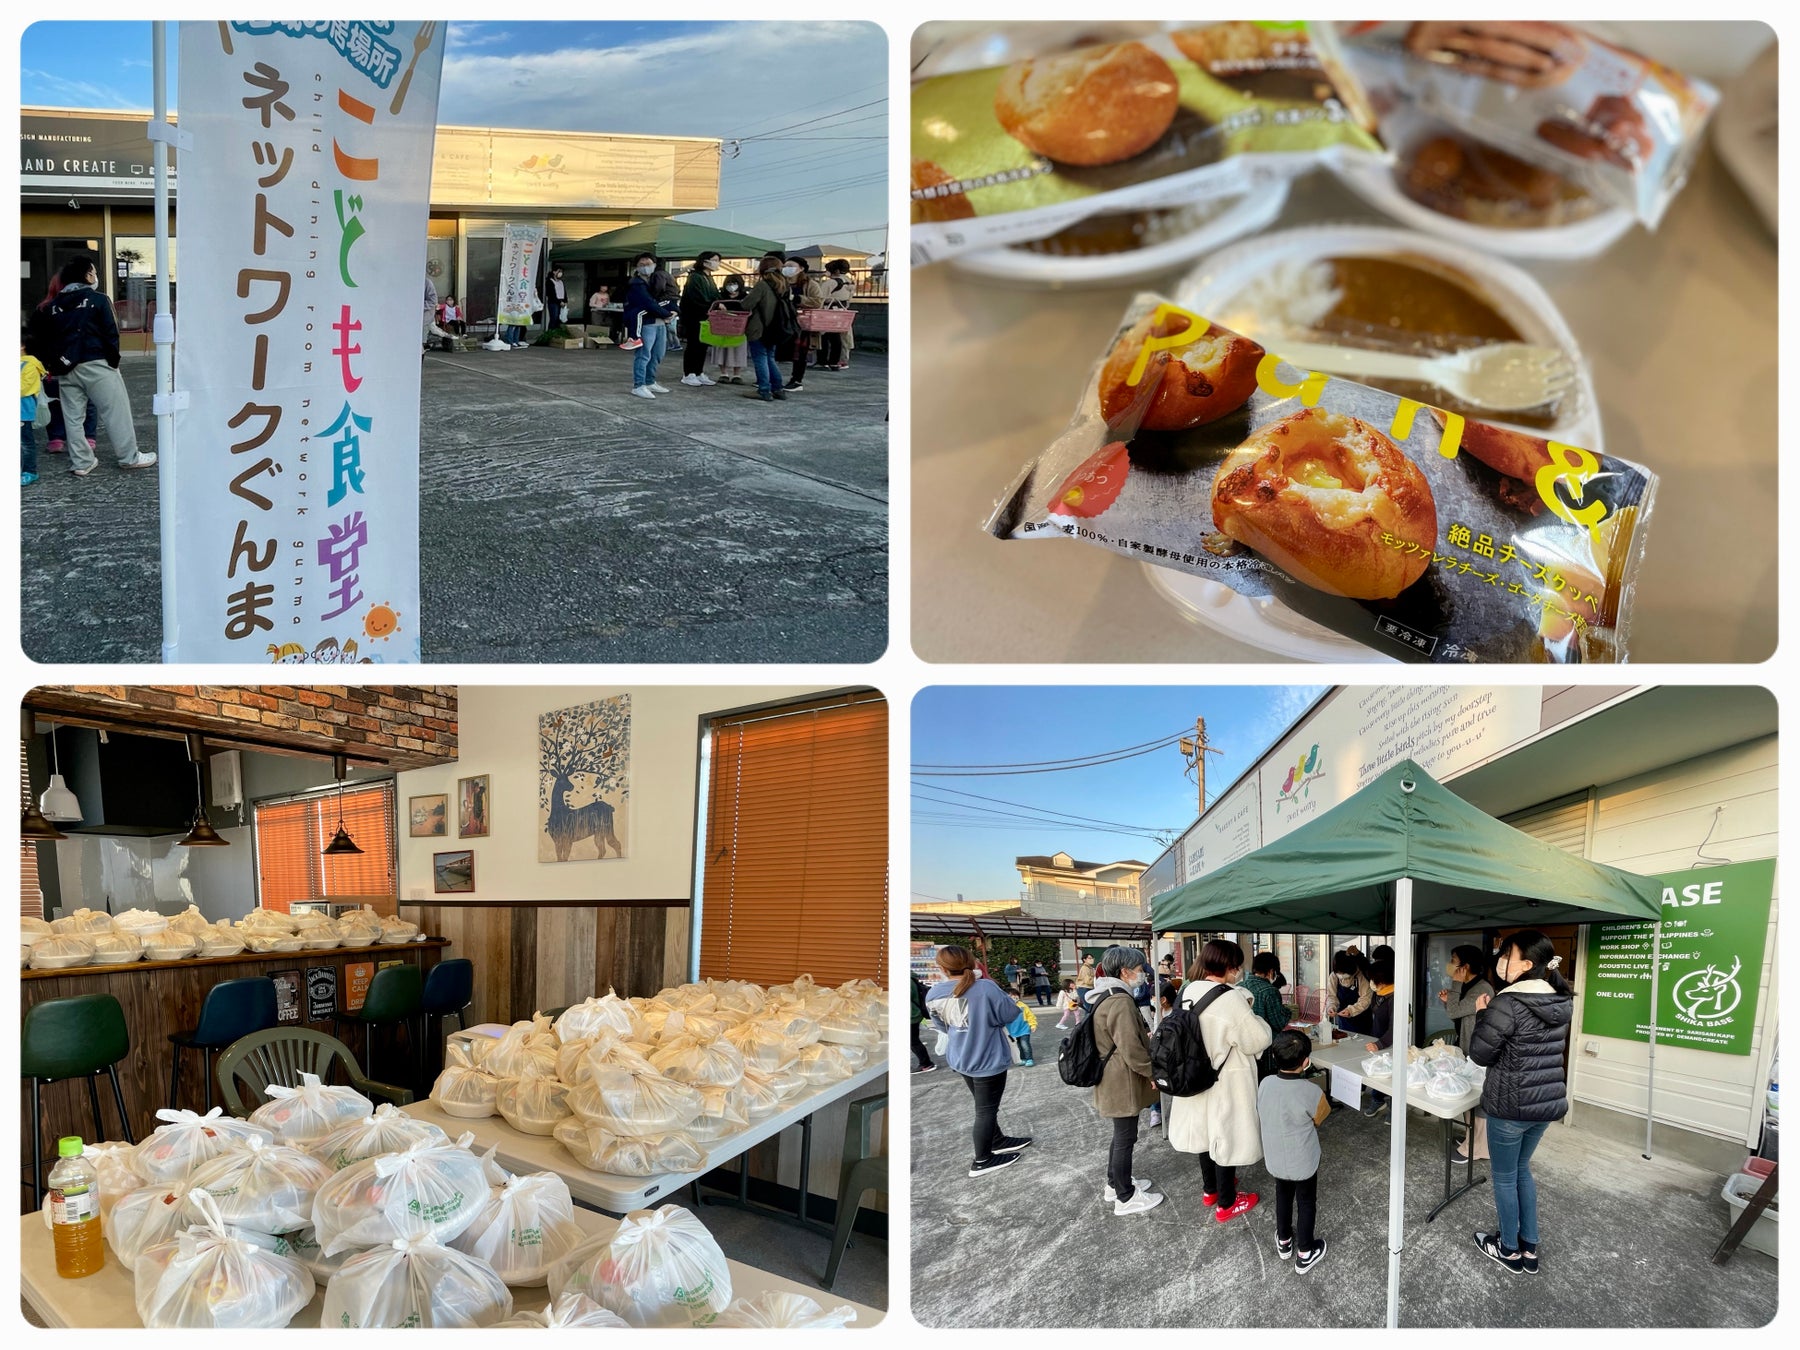 スタイルブレッド、群馬県の飲食店と共に社会の課題解決・地域活性化をのサブ画像1